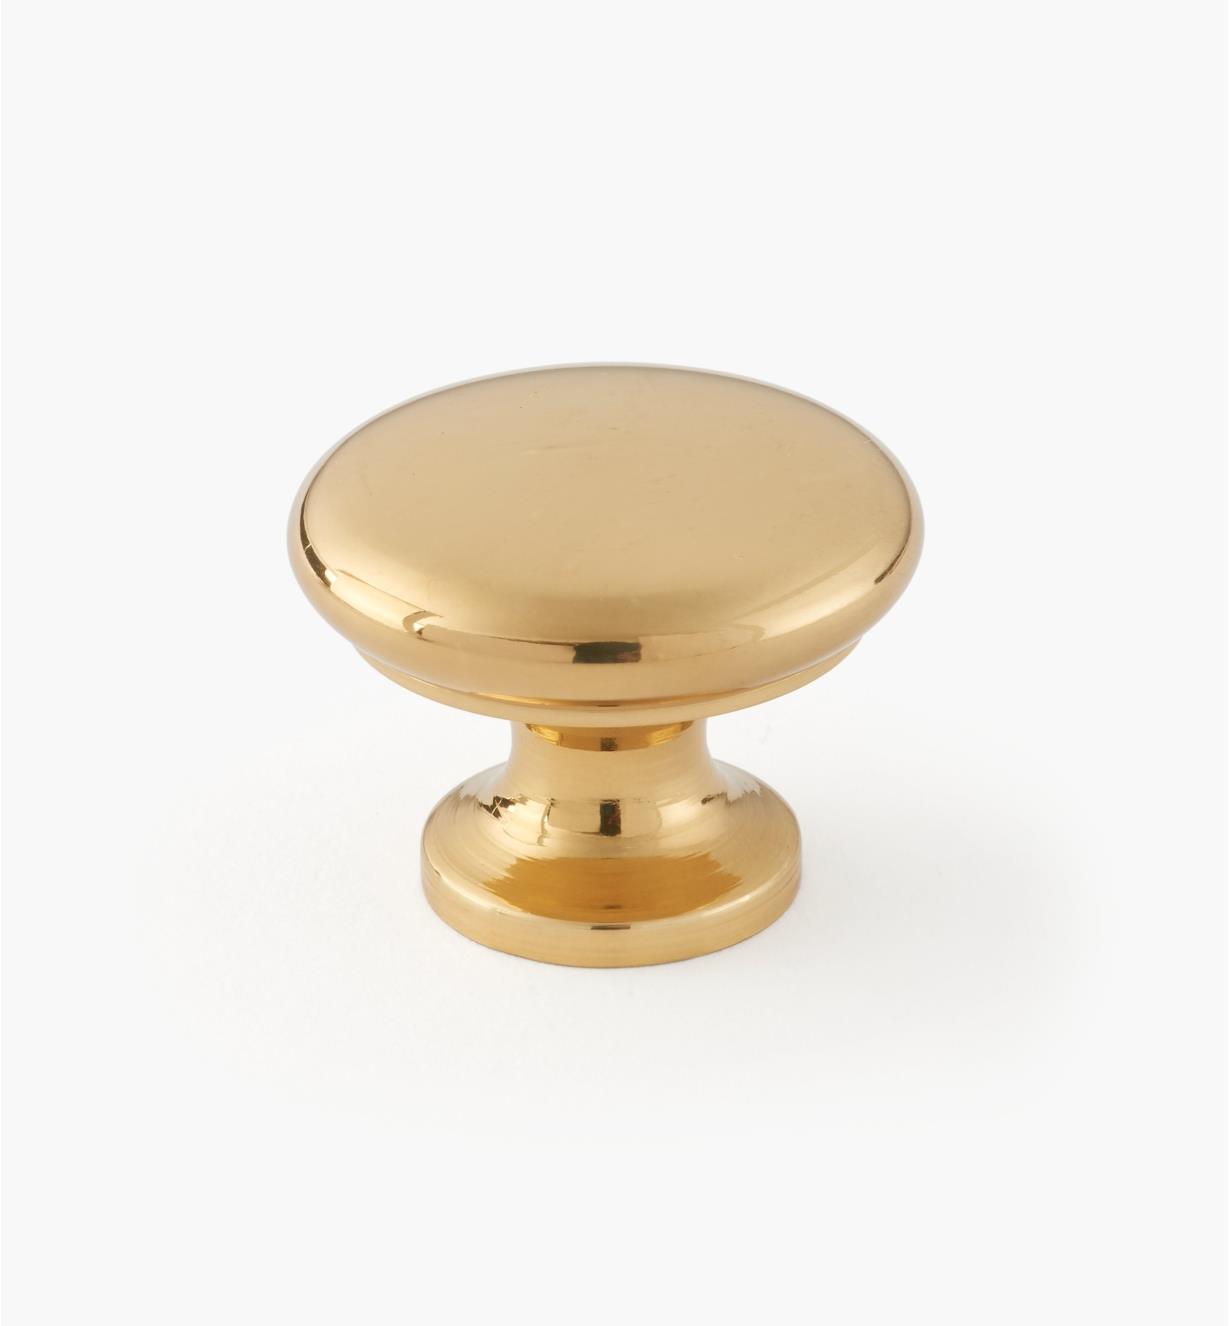 00W5501 - 1 1/8" x 1" Brass Knob